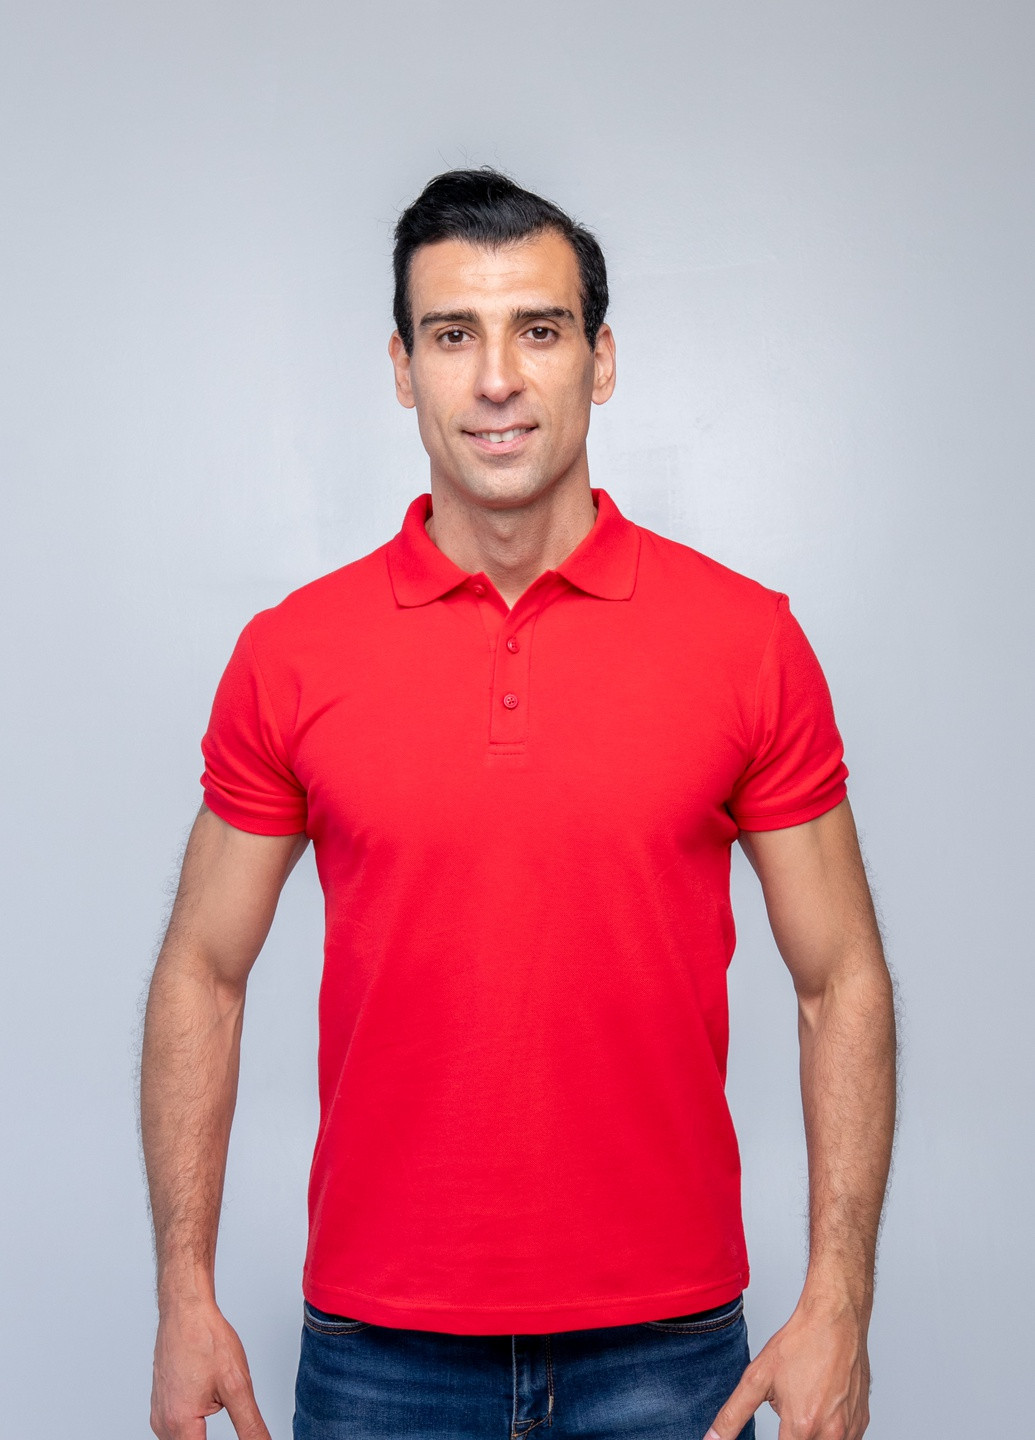 Красная футболка-футболка поло чоловіча для мужчин TvoePolo однотонная